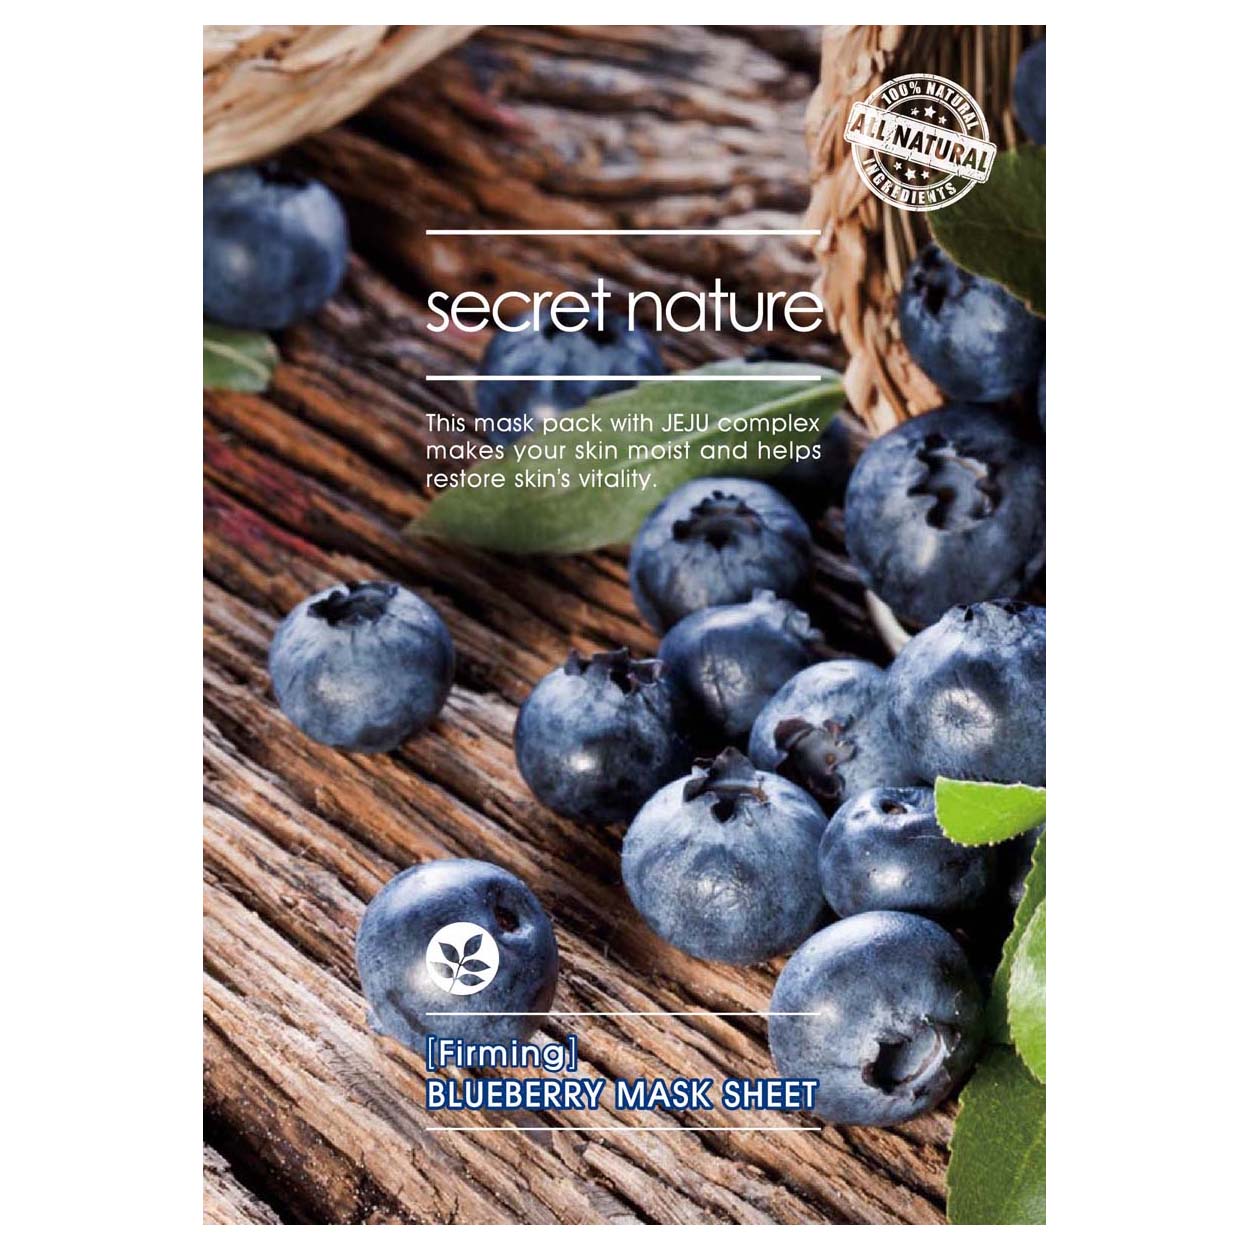 Tone Up Blueberry Mask Sheet Secret Nature